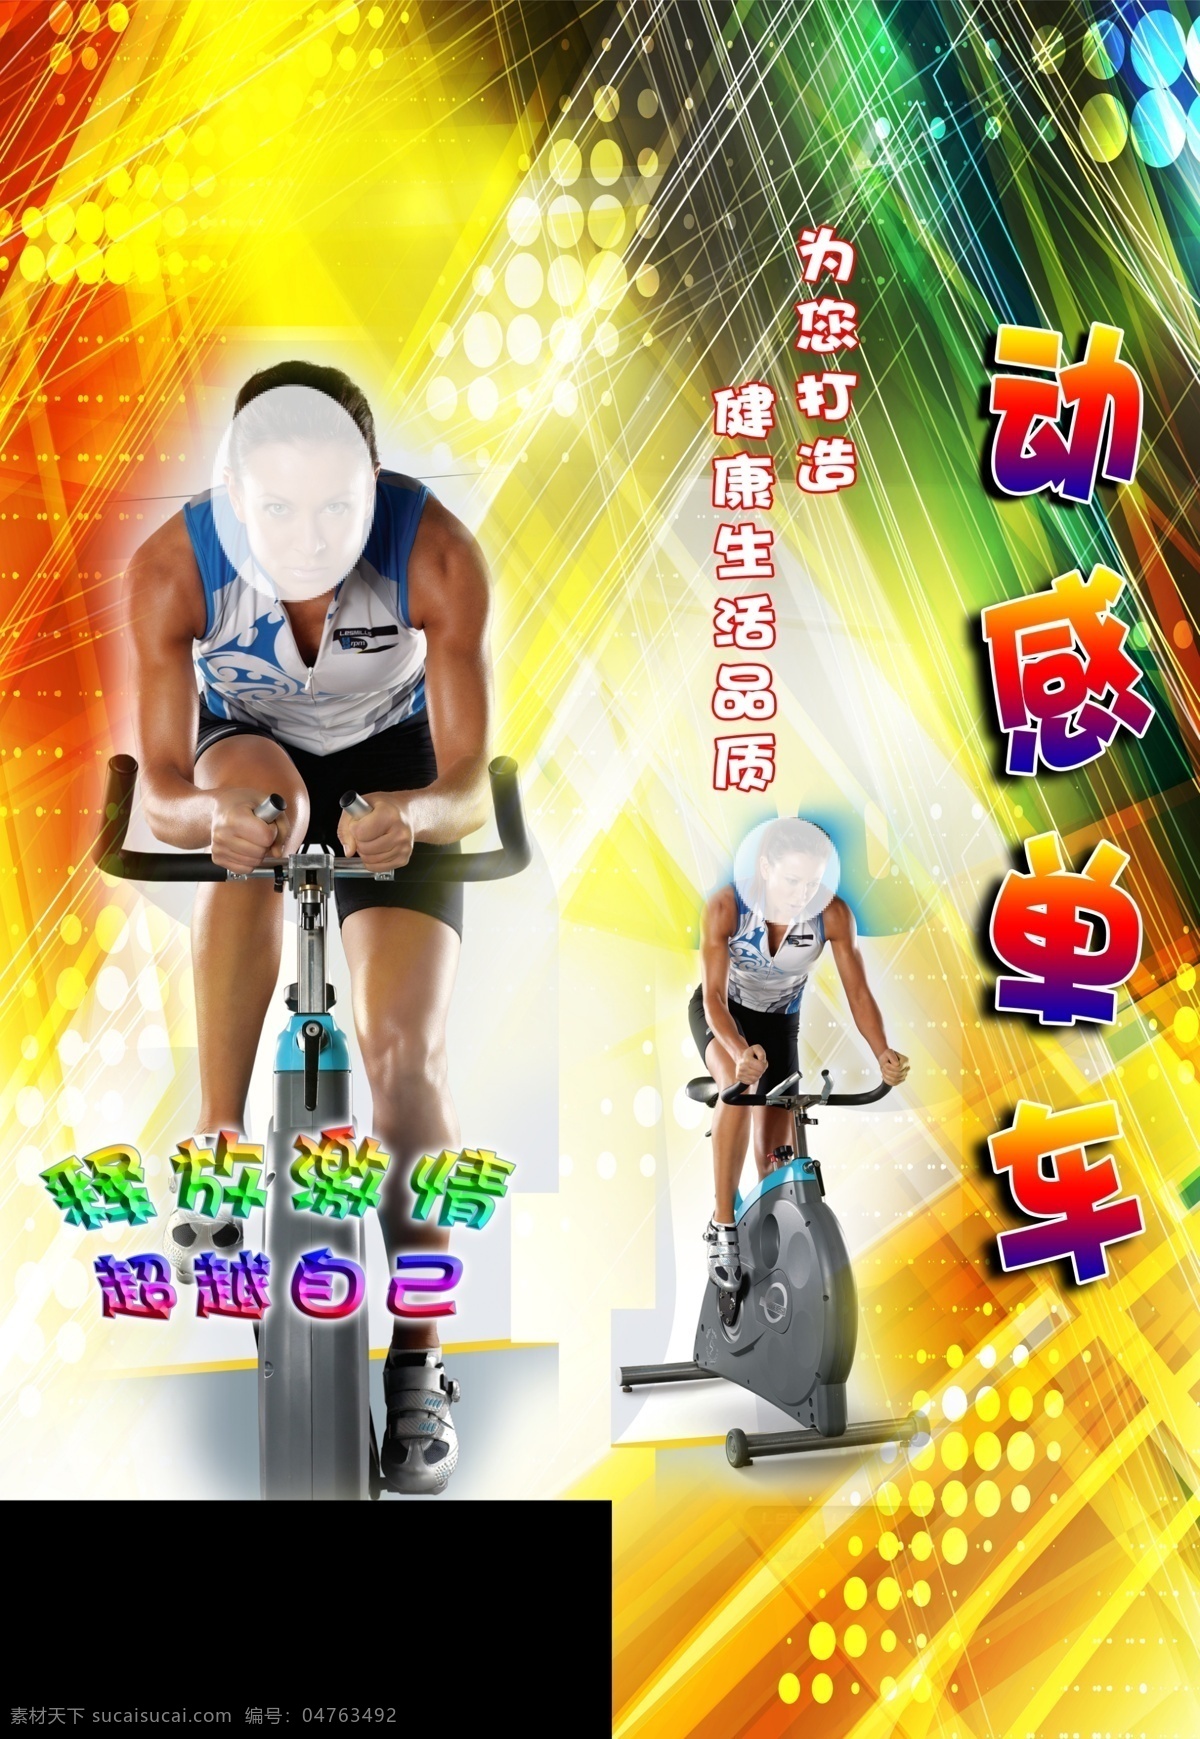 健身会所 动感 单车 动感单车 健身房 动感背景 其他模版 广告设计模板 源文件